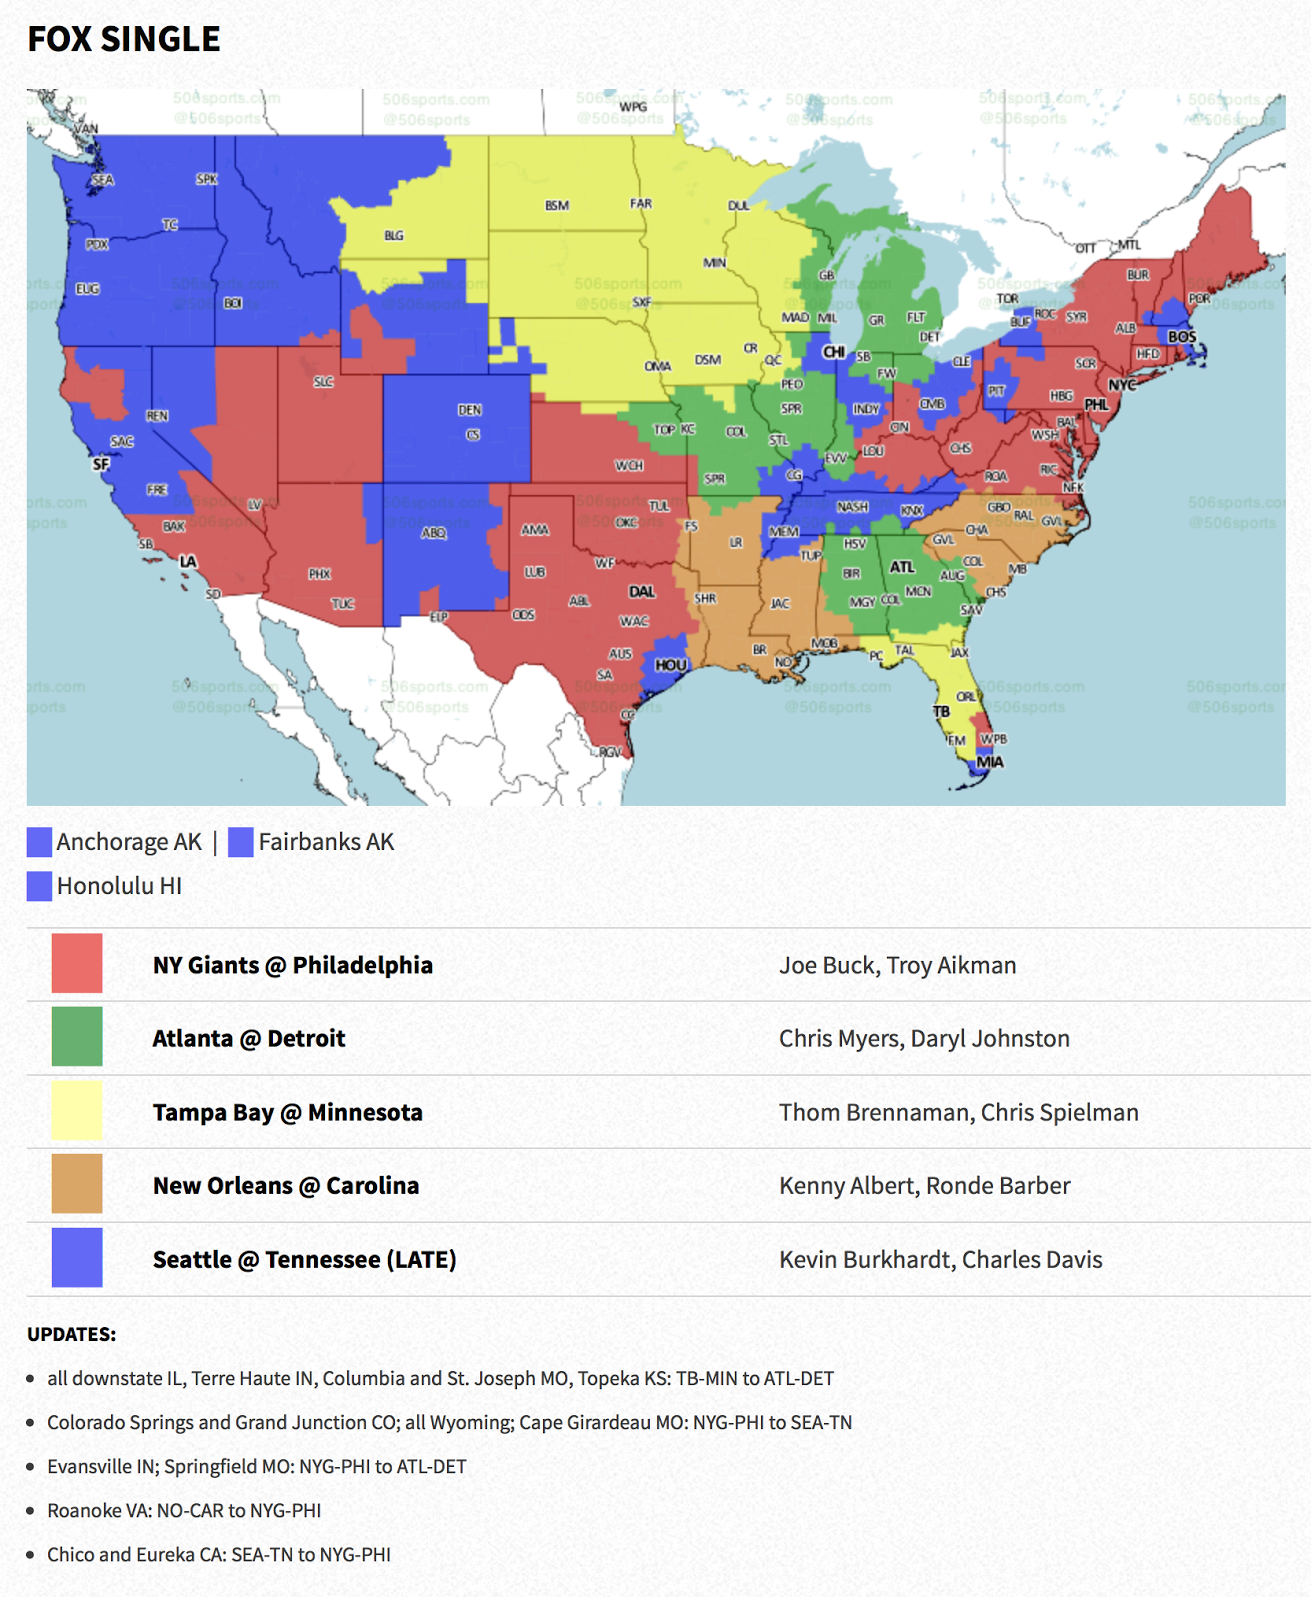 PACKERVILLE, U.S.A. NFL Week 3 TV Maps